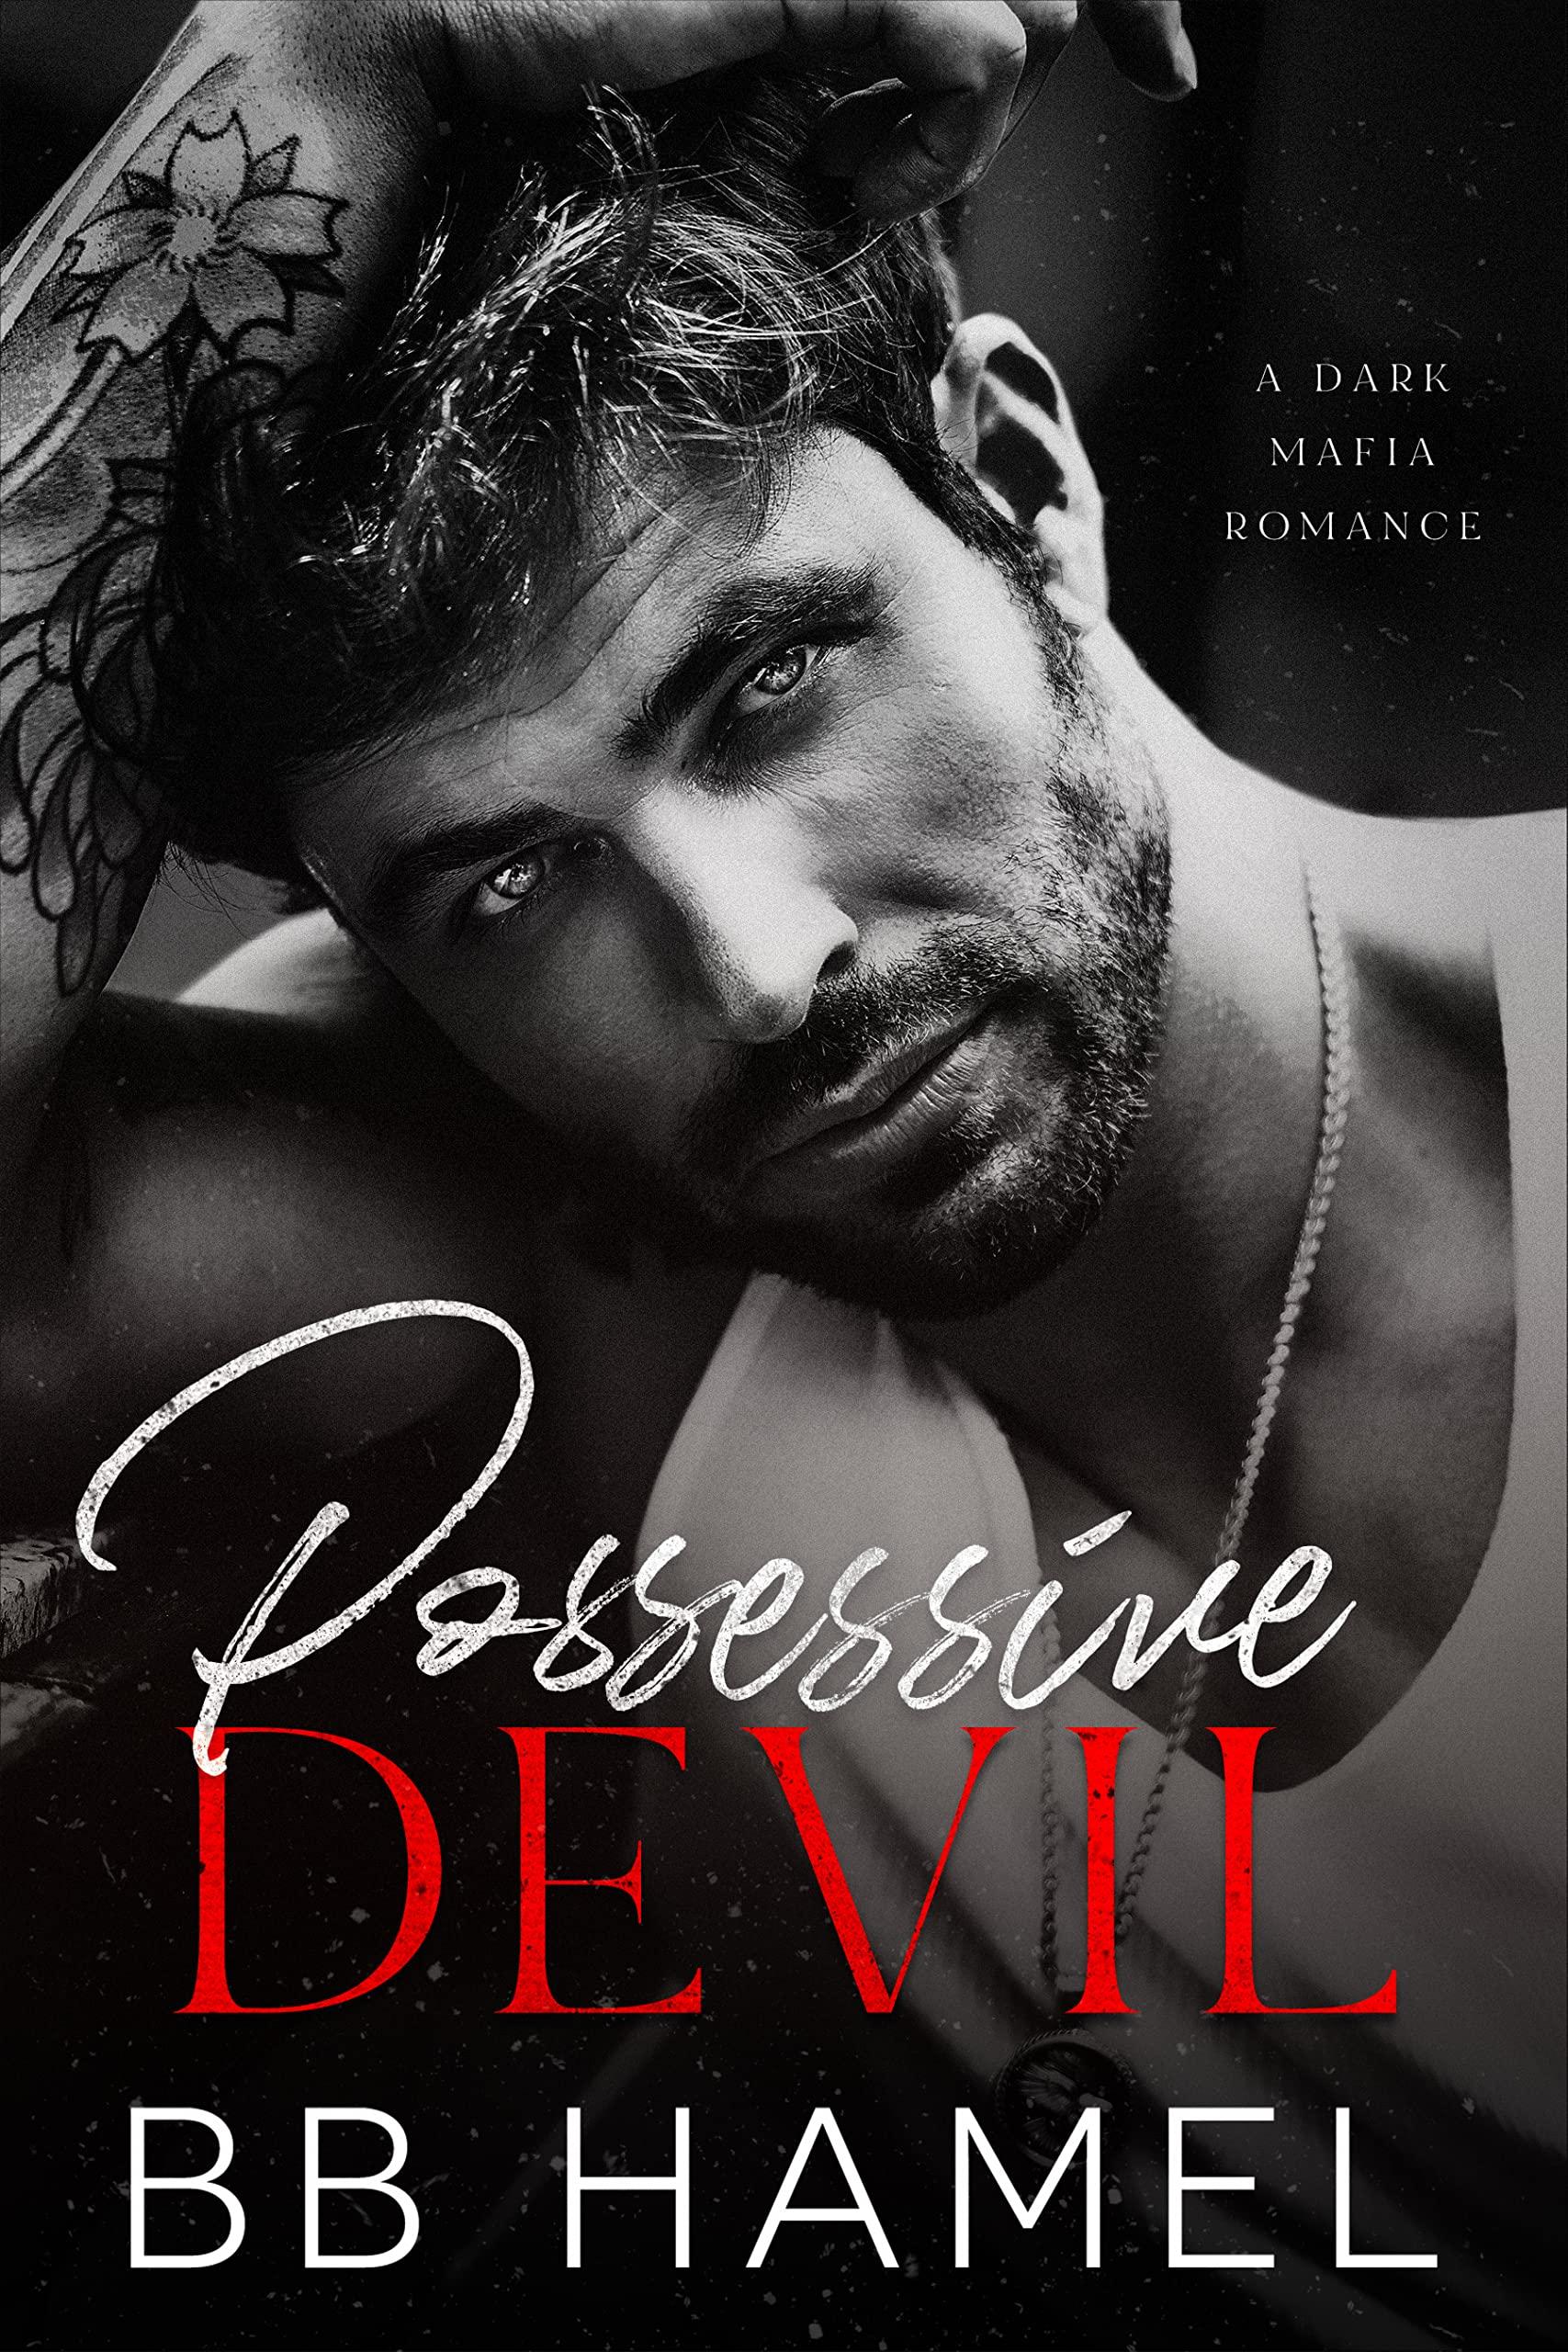 Possessive Devil